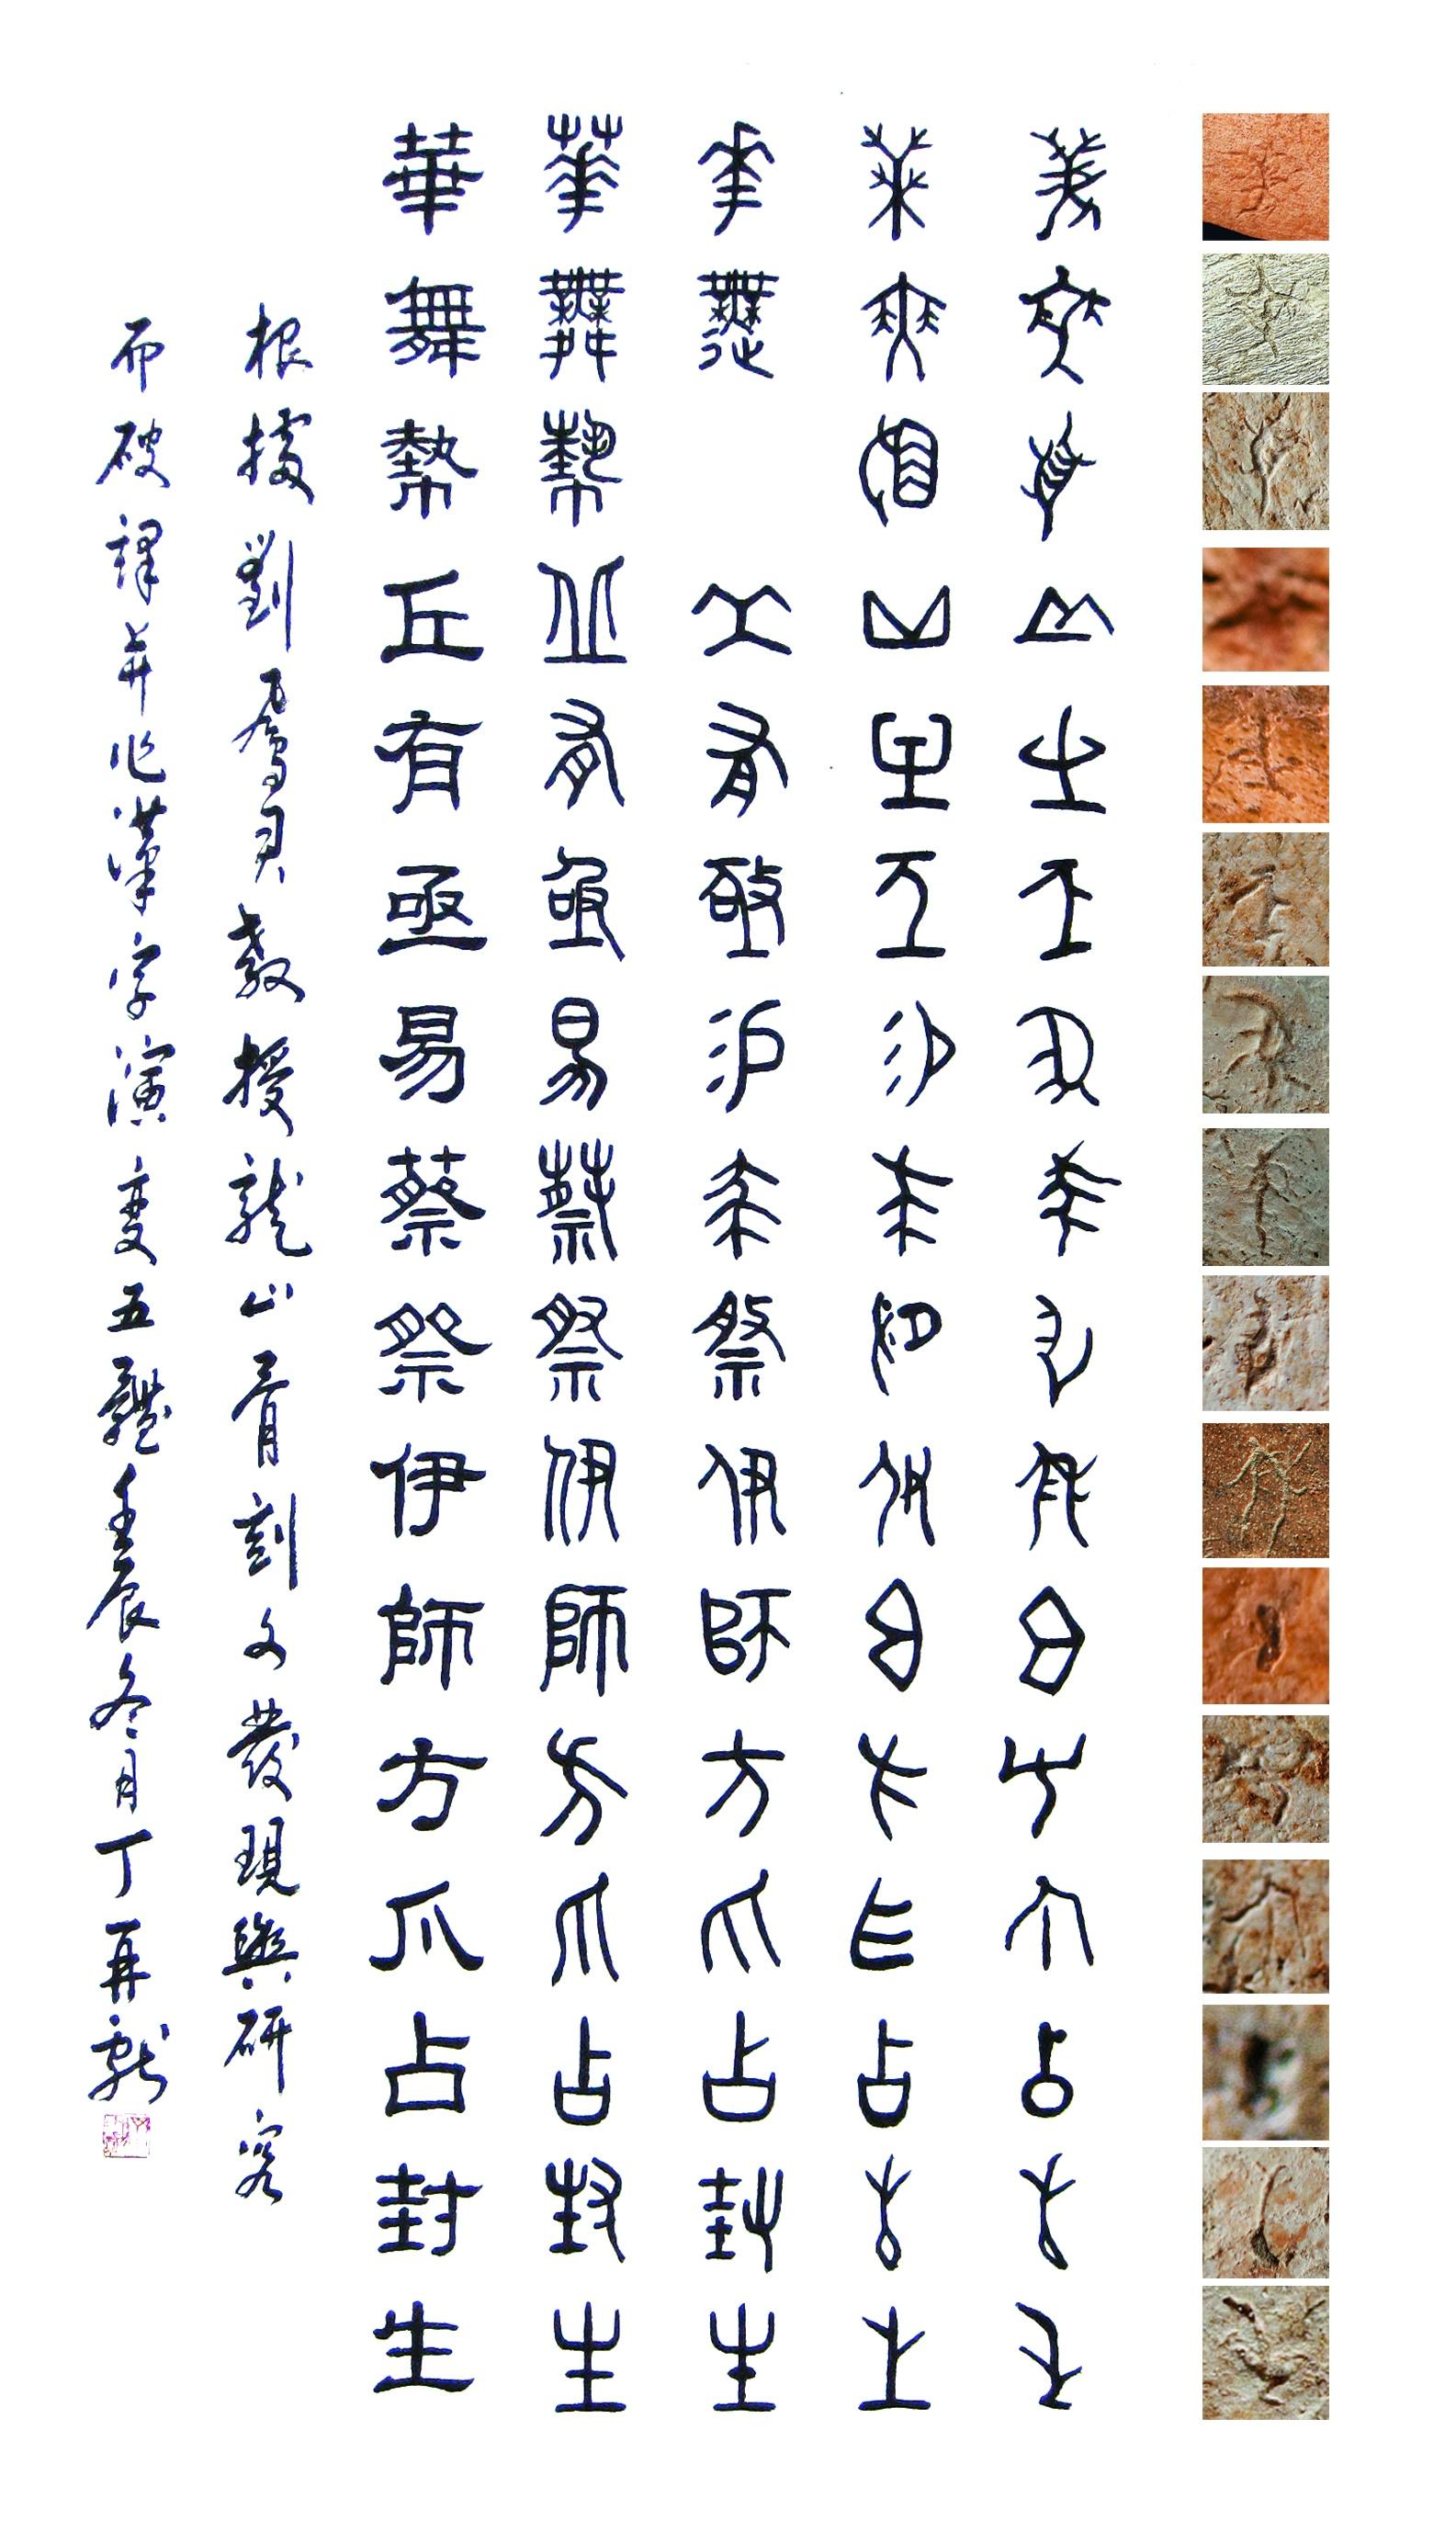 并与甲骨文,金文,小篆,隶书并列书写成文,展示了汉字从骨刻文到甲骨文